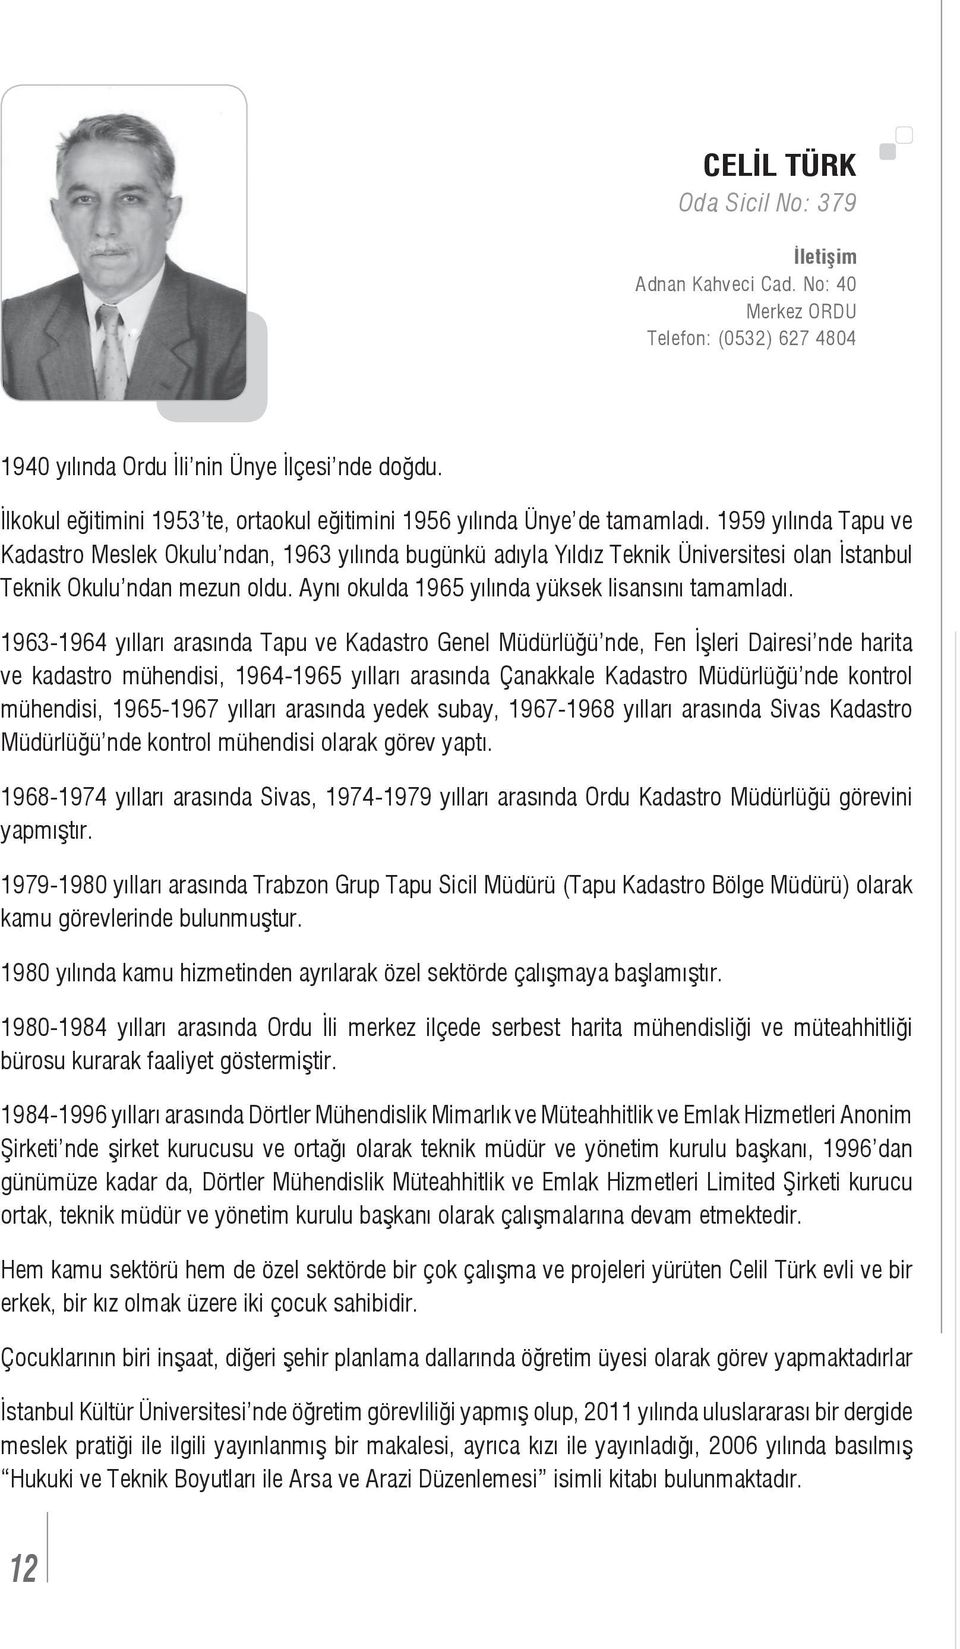 1959 yılında Tapu ve Kadastro Meslek Okulu ndan, 1963 yılında bugünkü adıyla Yıldız Teknik Üniversitesi olan İstanbul Teknik Okulu ndan mezun oldu. Aynı okulda 1965 yılında yüksek lisansını tamamladı.